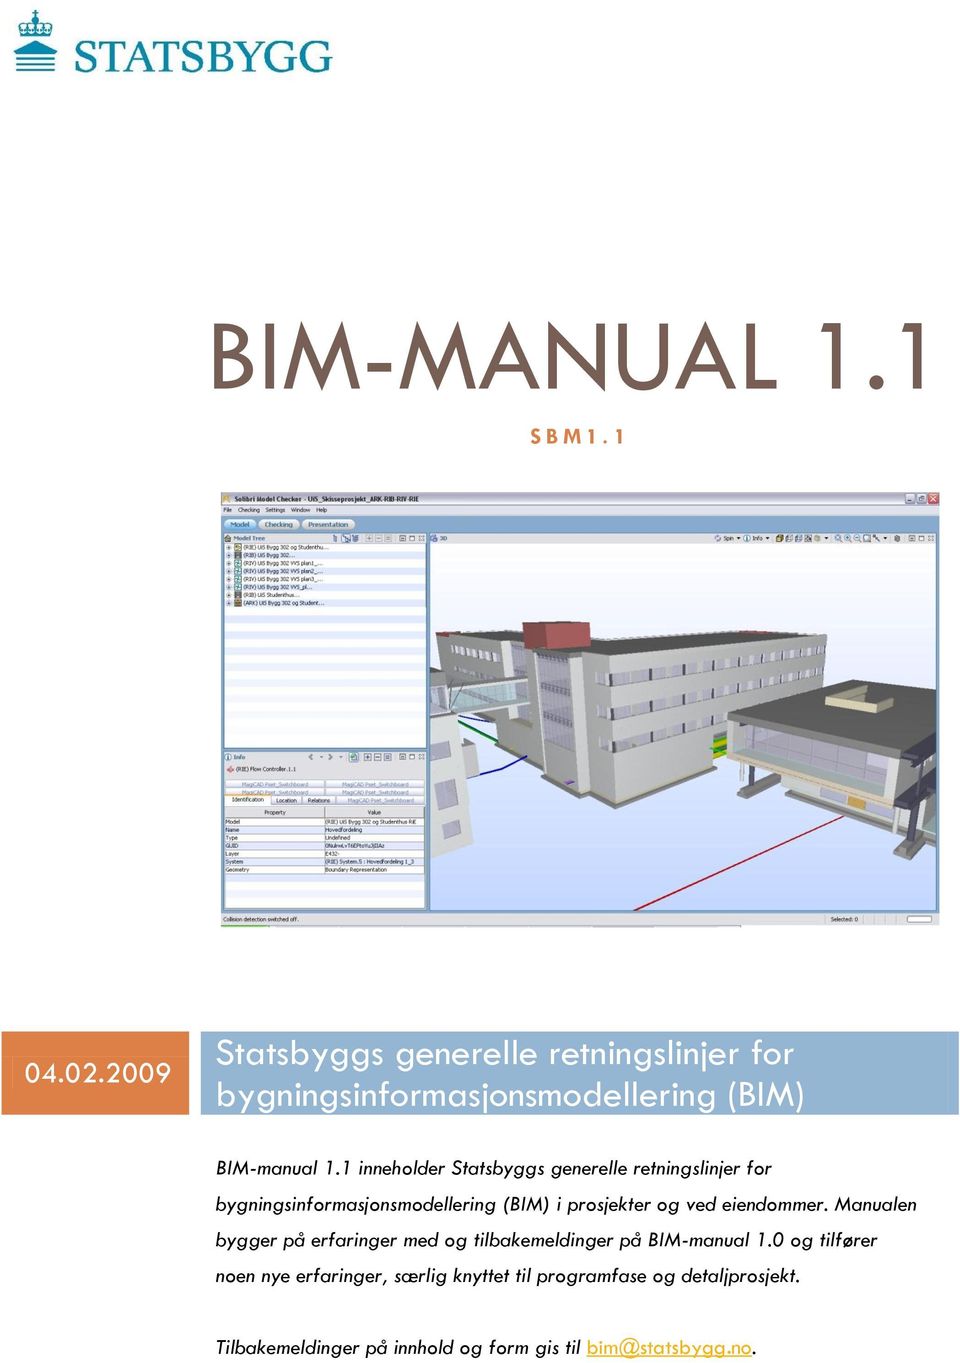 1 inneholder Statsbyggs generelle retningslinjer for bygningsinformasjonsmodellering (BIM) i prosjekter og ved